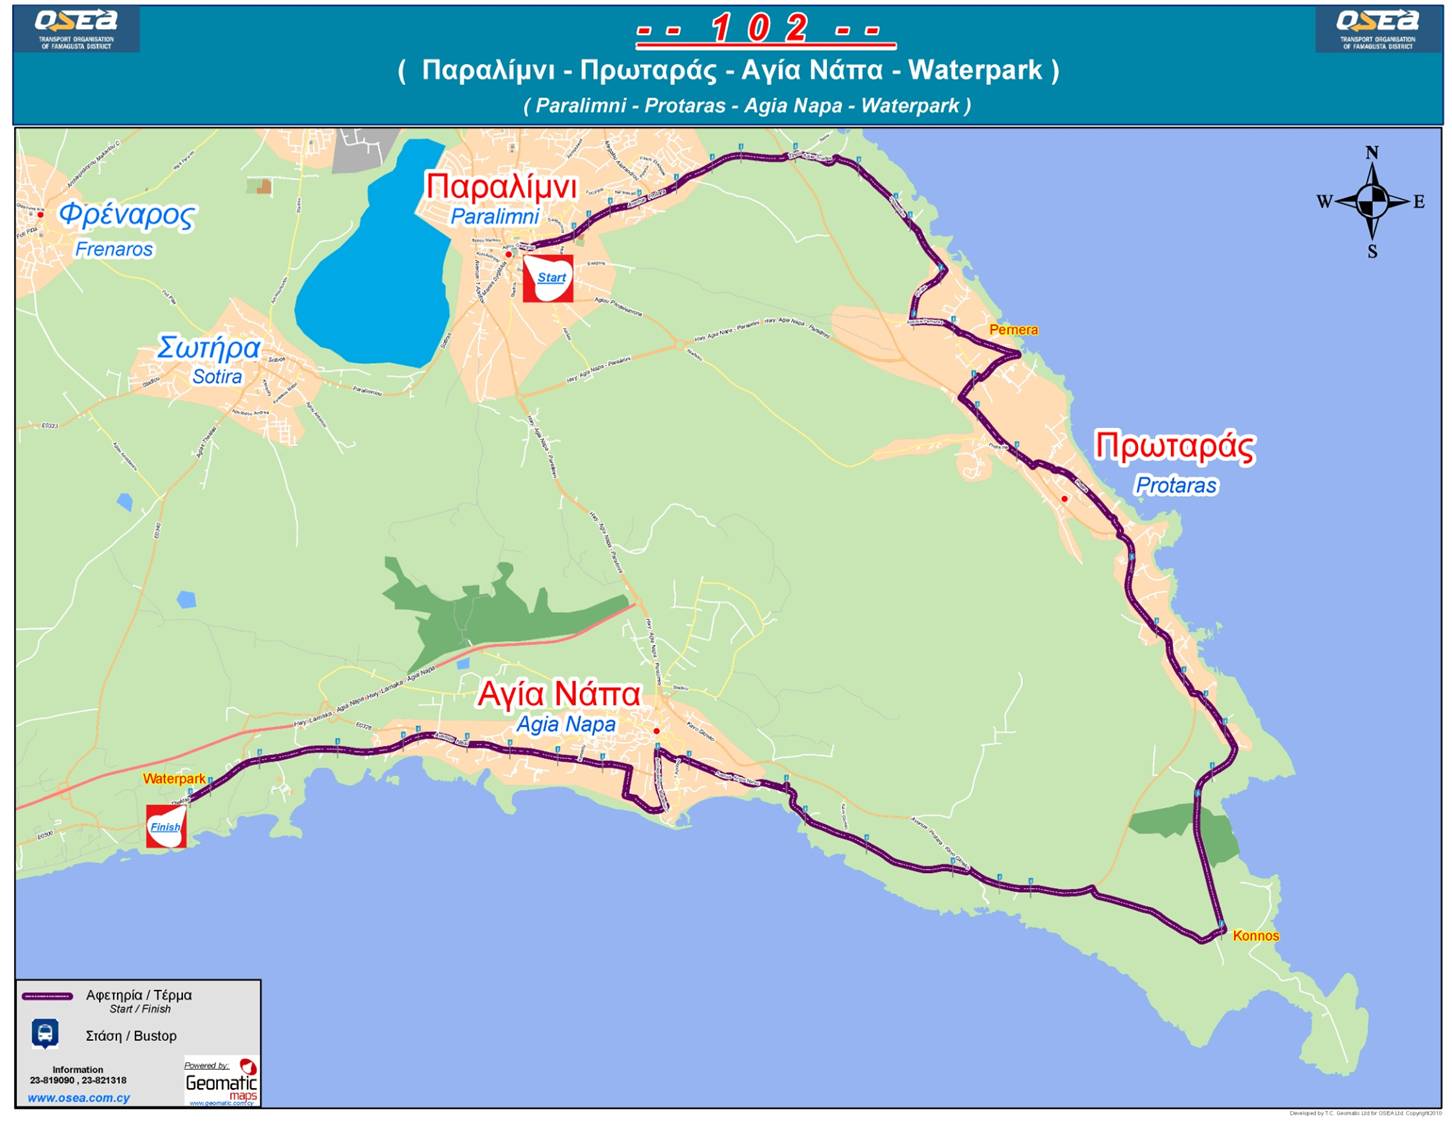 Автобус 101 маршрут на карте. Маршрут автобуса 101 и 102 Айя Напа. Протарас на карте Кипра. 101 Автобус Кипр. Айя Напа на карте Кипра.